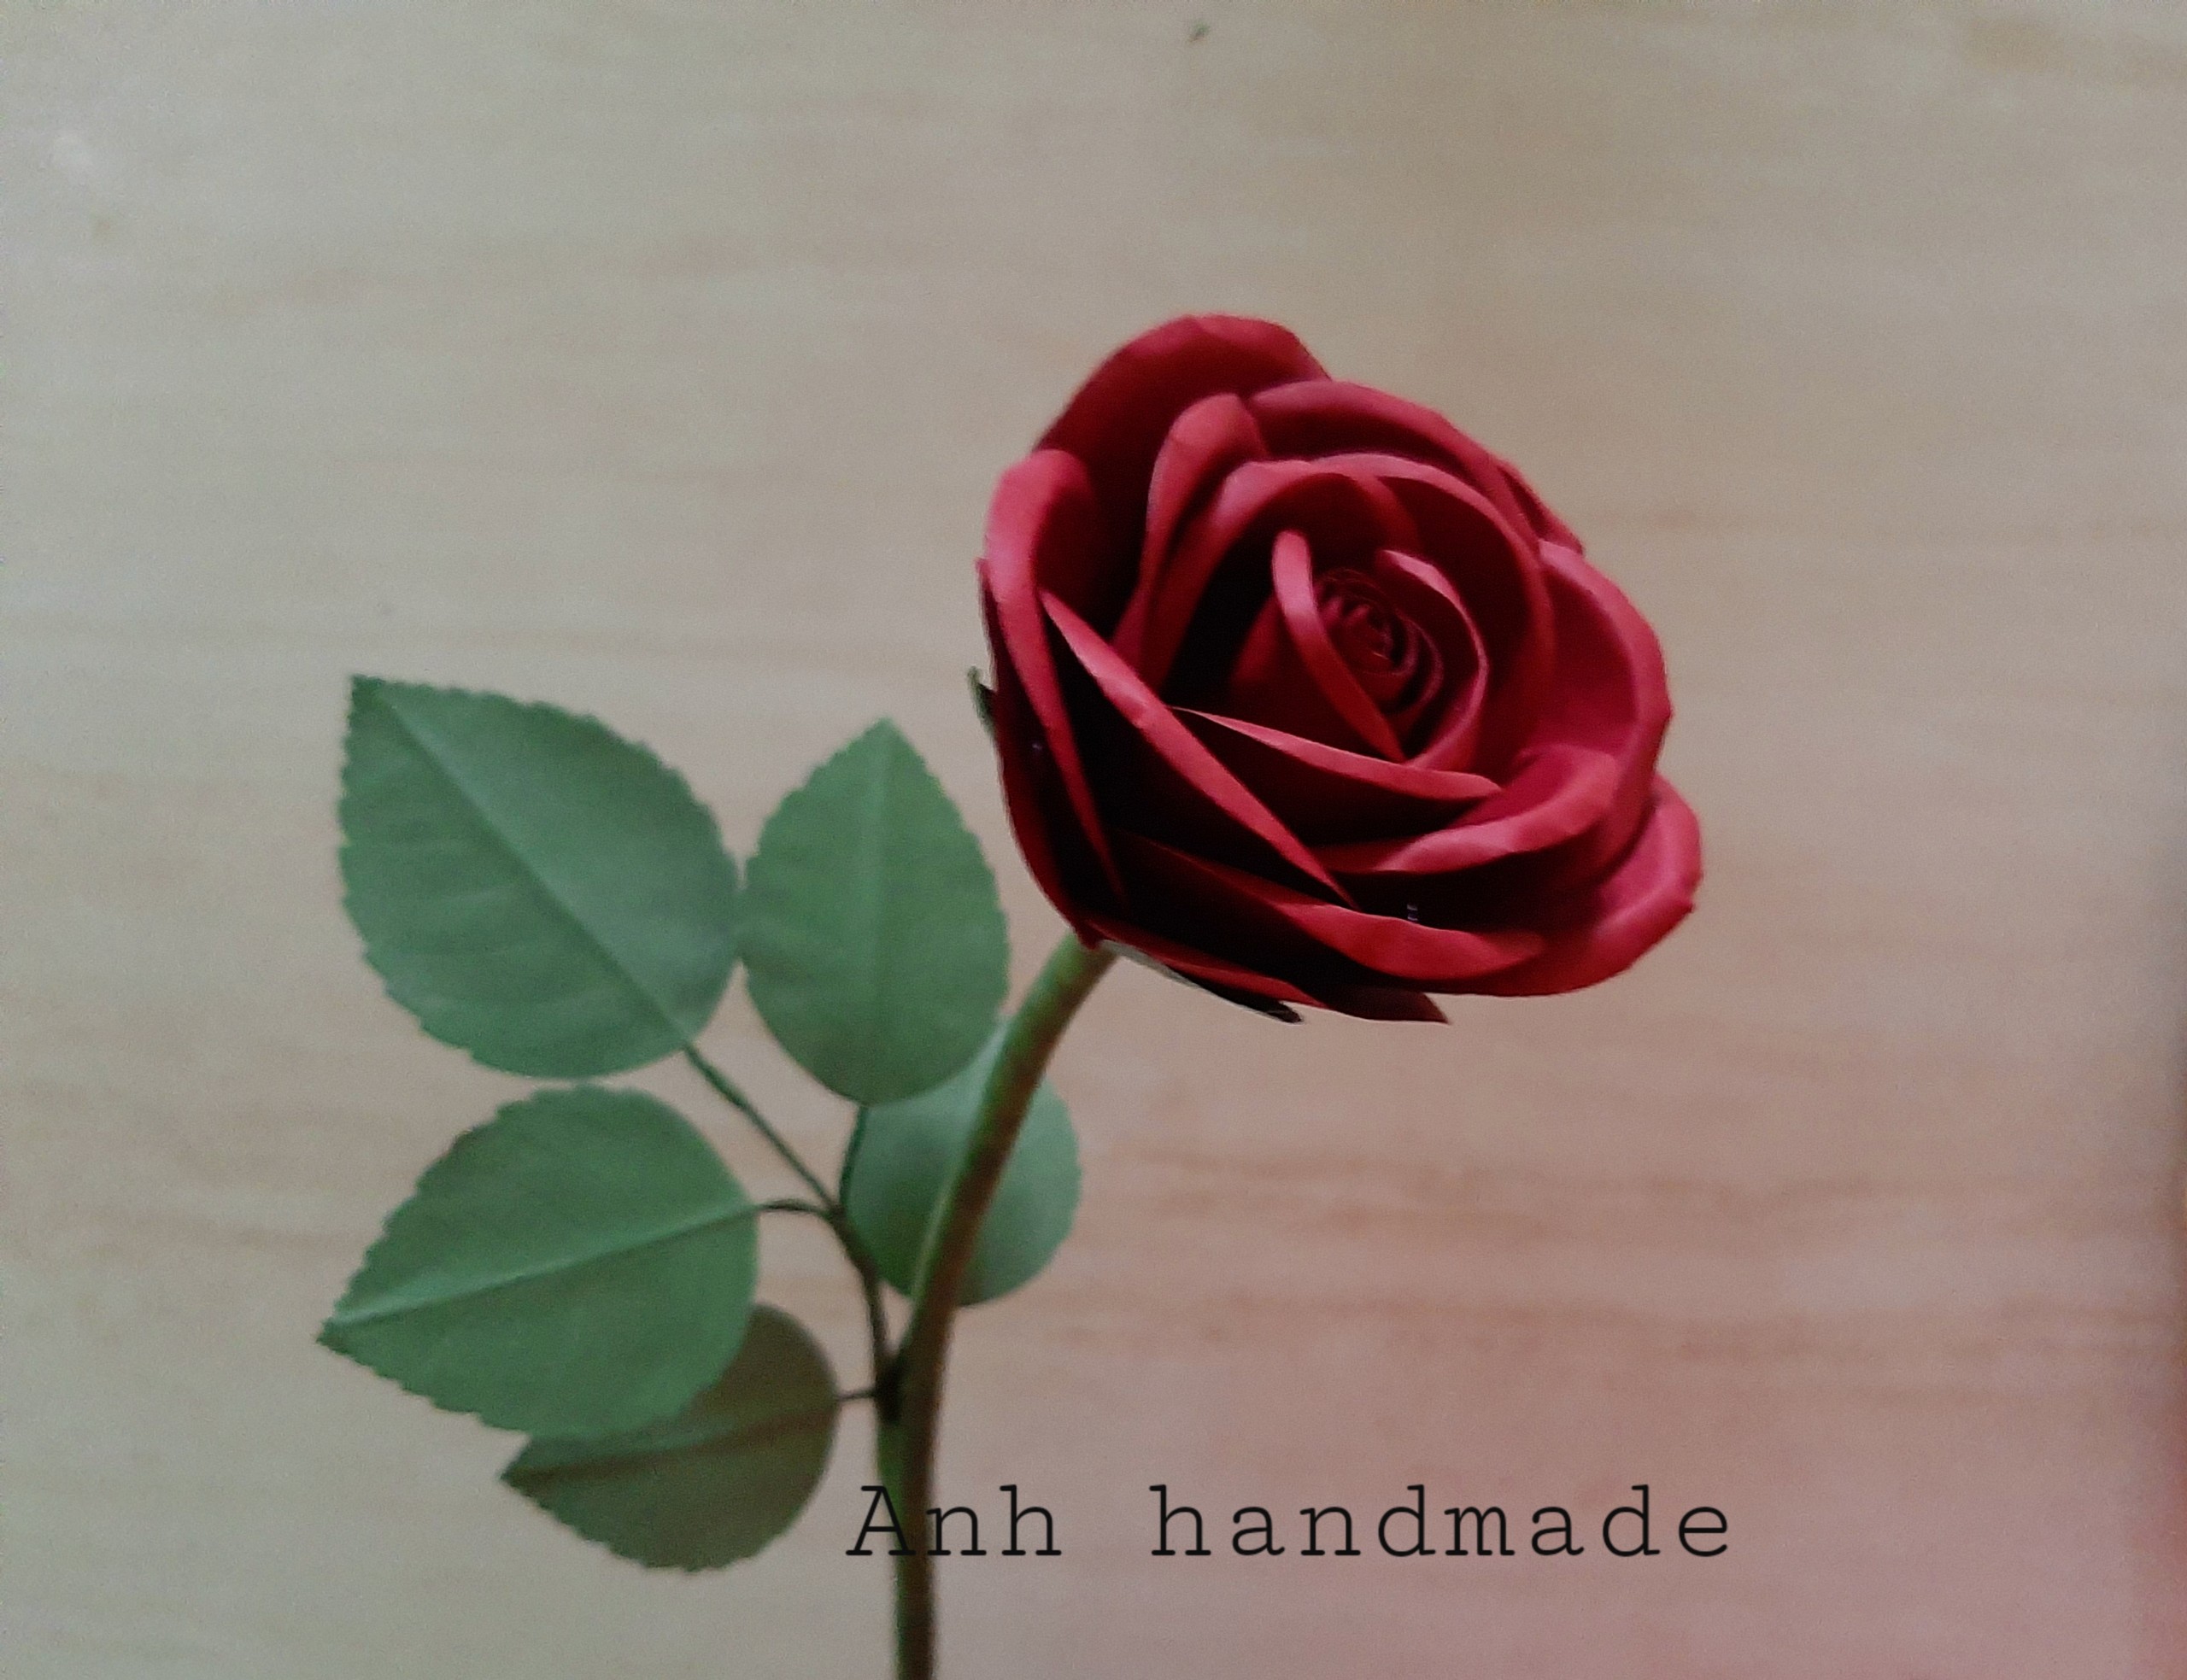 Set nguyên liệu cắt sẵn làm 10 đầu hoa hồng nhung bằng giấy mỹ thuật có kèm đài hoa